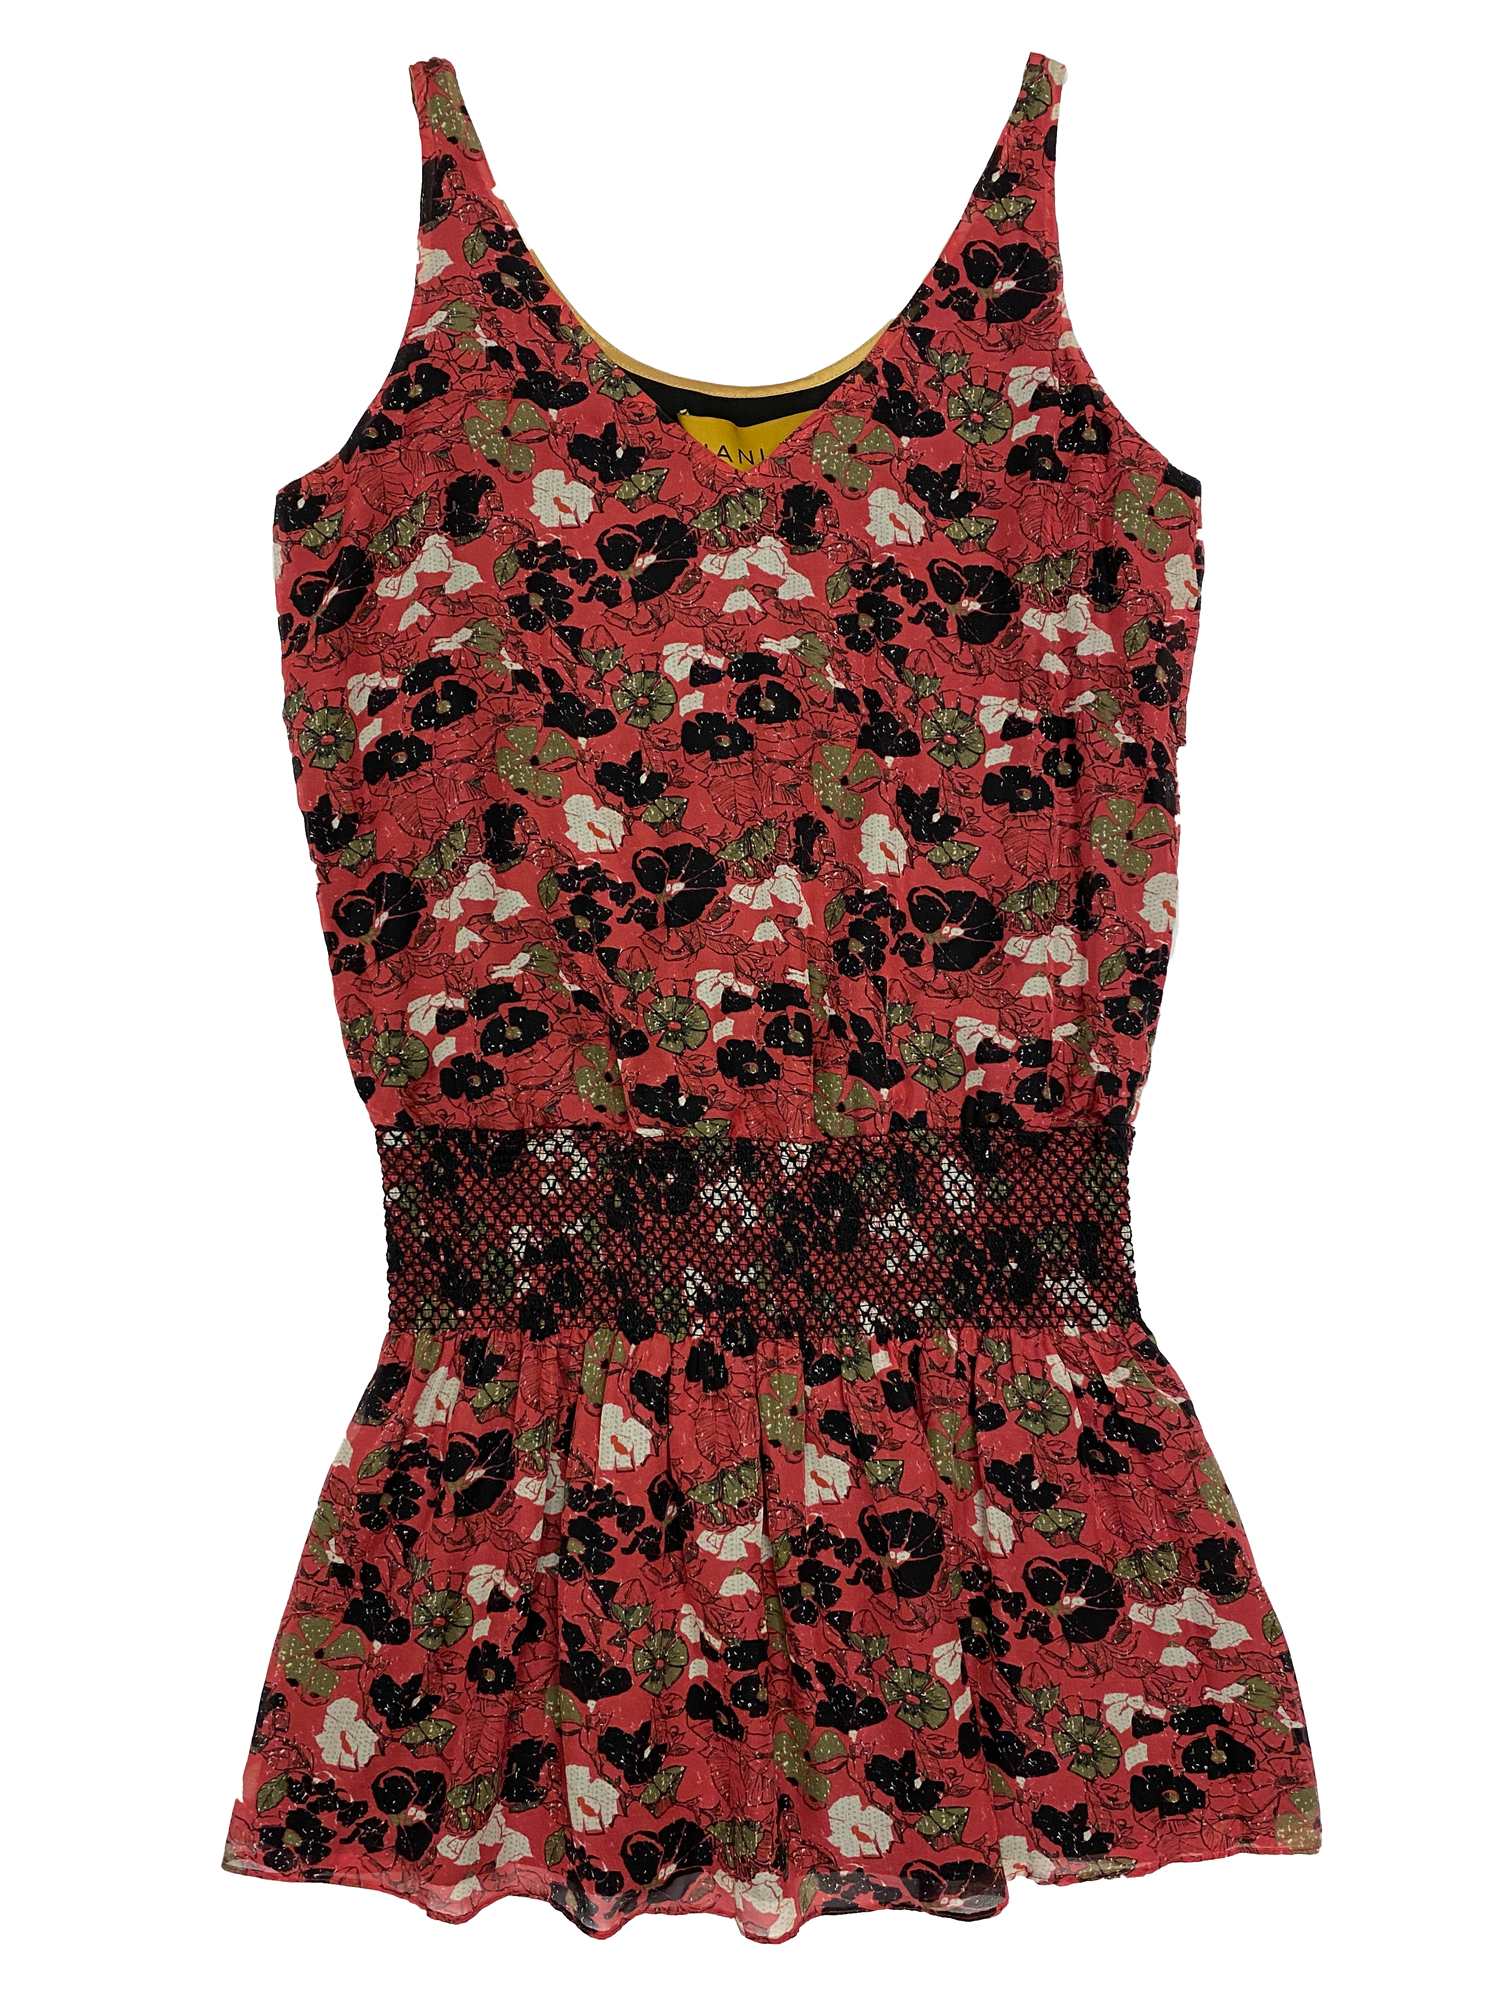 Hanley Mellon Women's Floral Mini Tank Dress